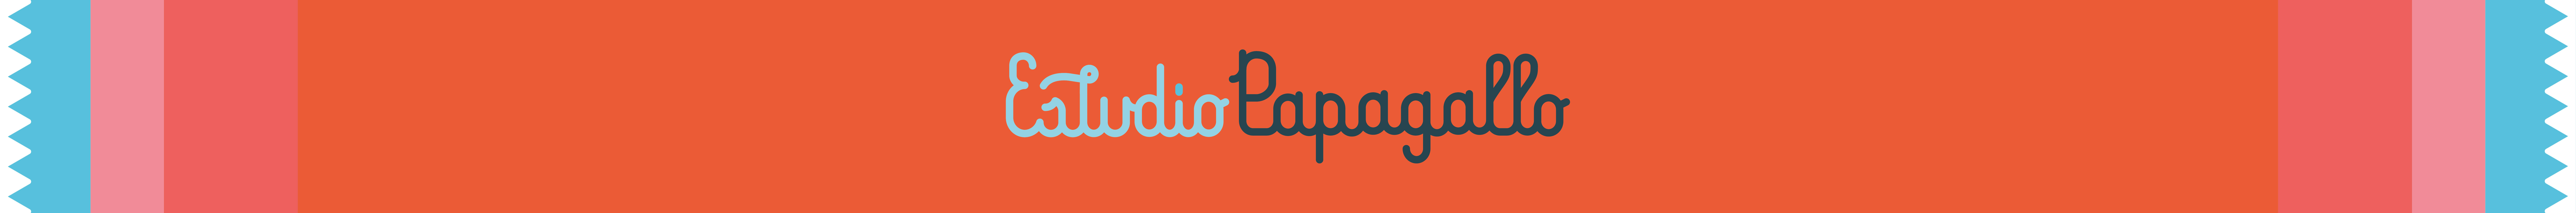 Estudio Papagallo's profile banner